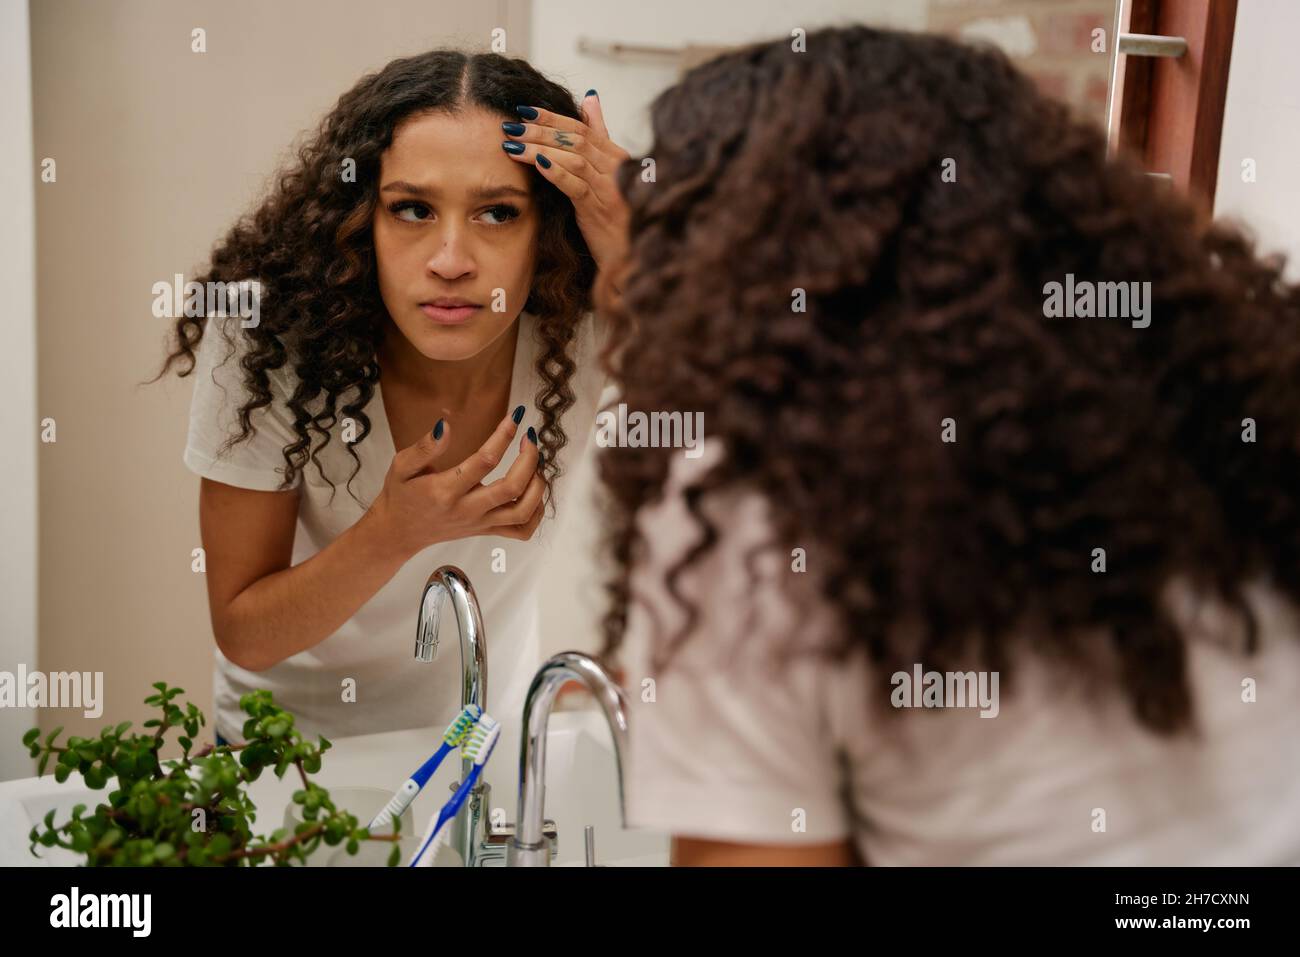 Multikulturelle junge Frau, die besorgt auf ihre Haut im Spiegel im modernen Badezimmer schaut Stockfoto